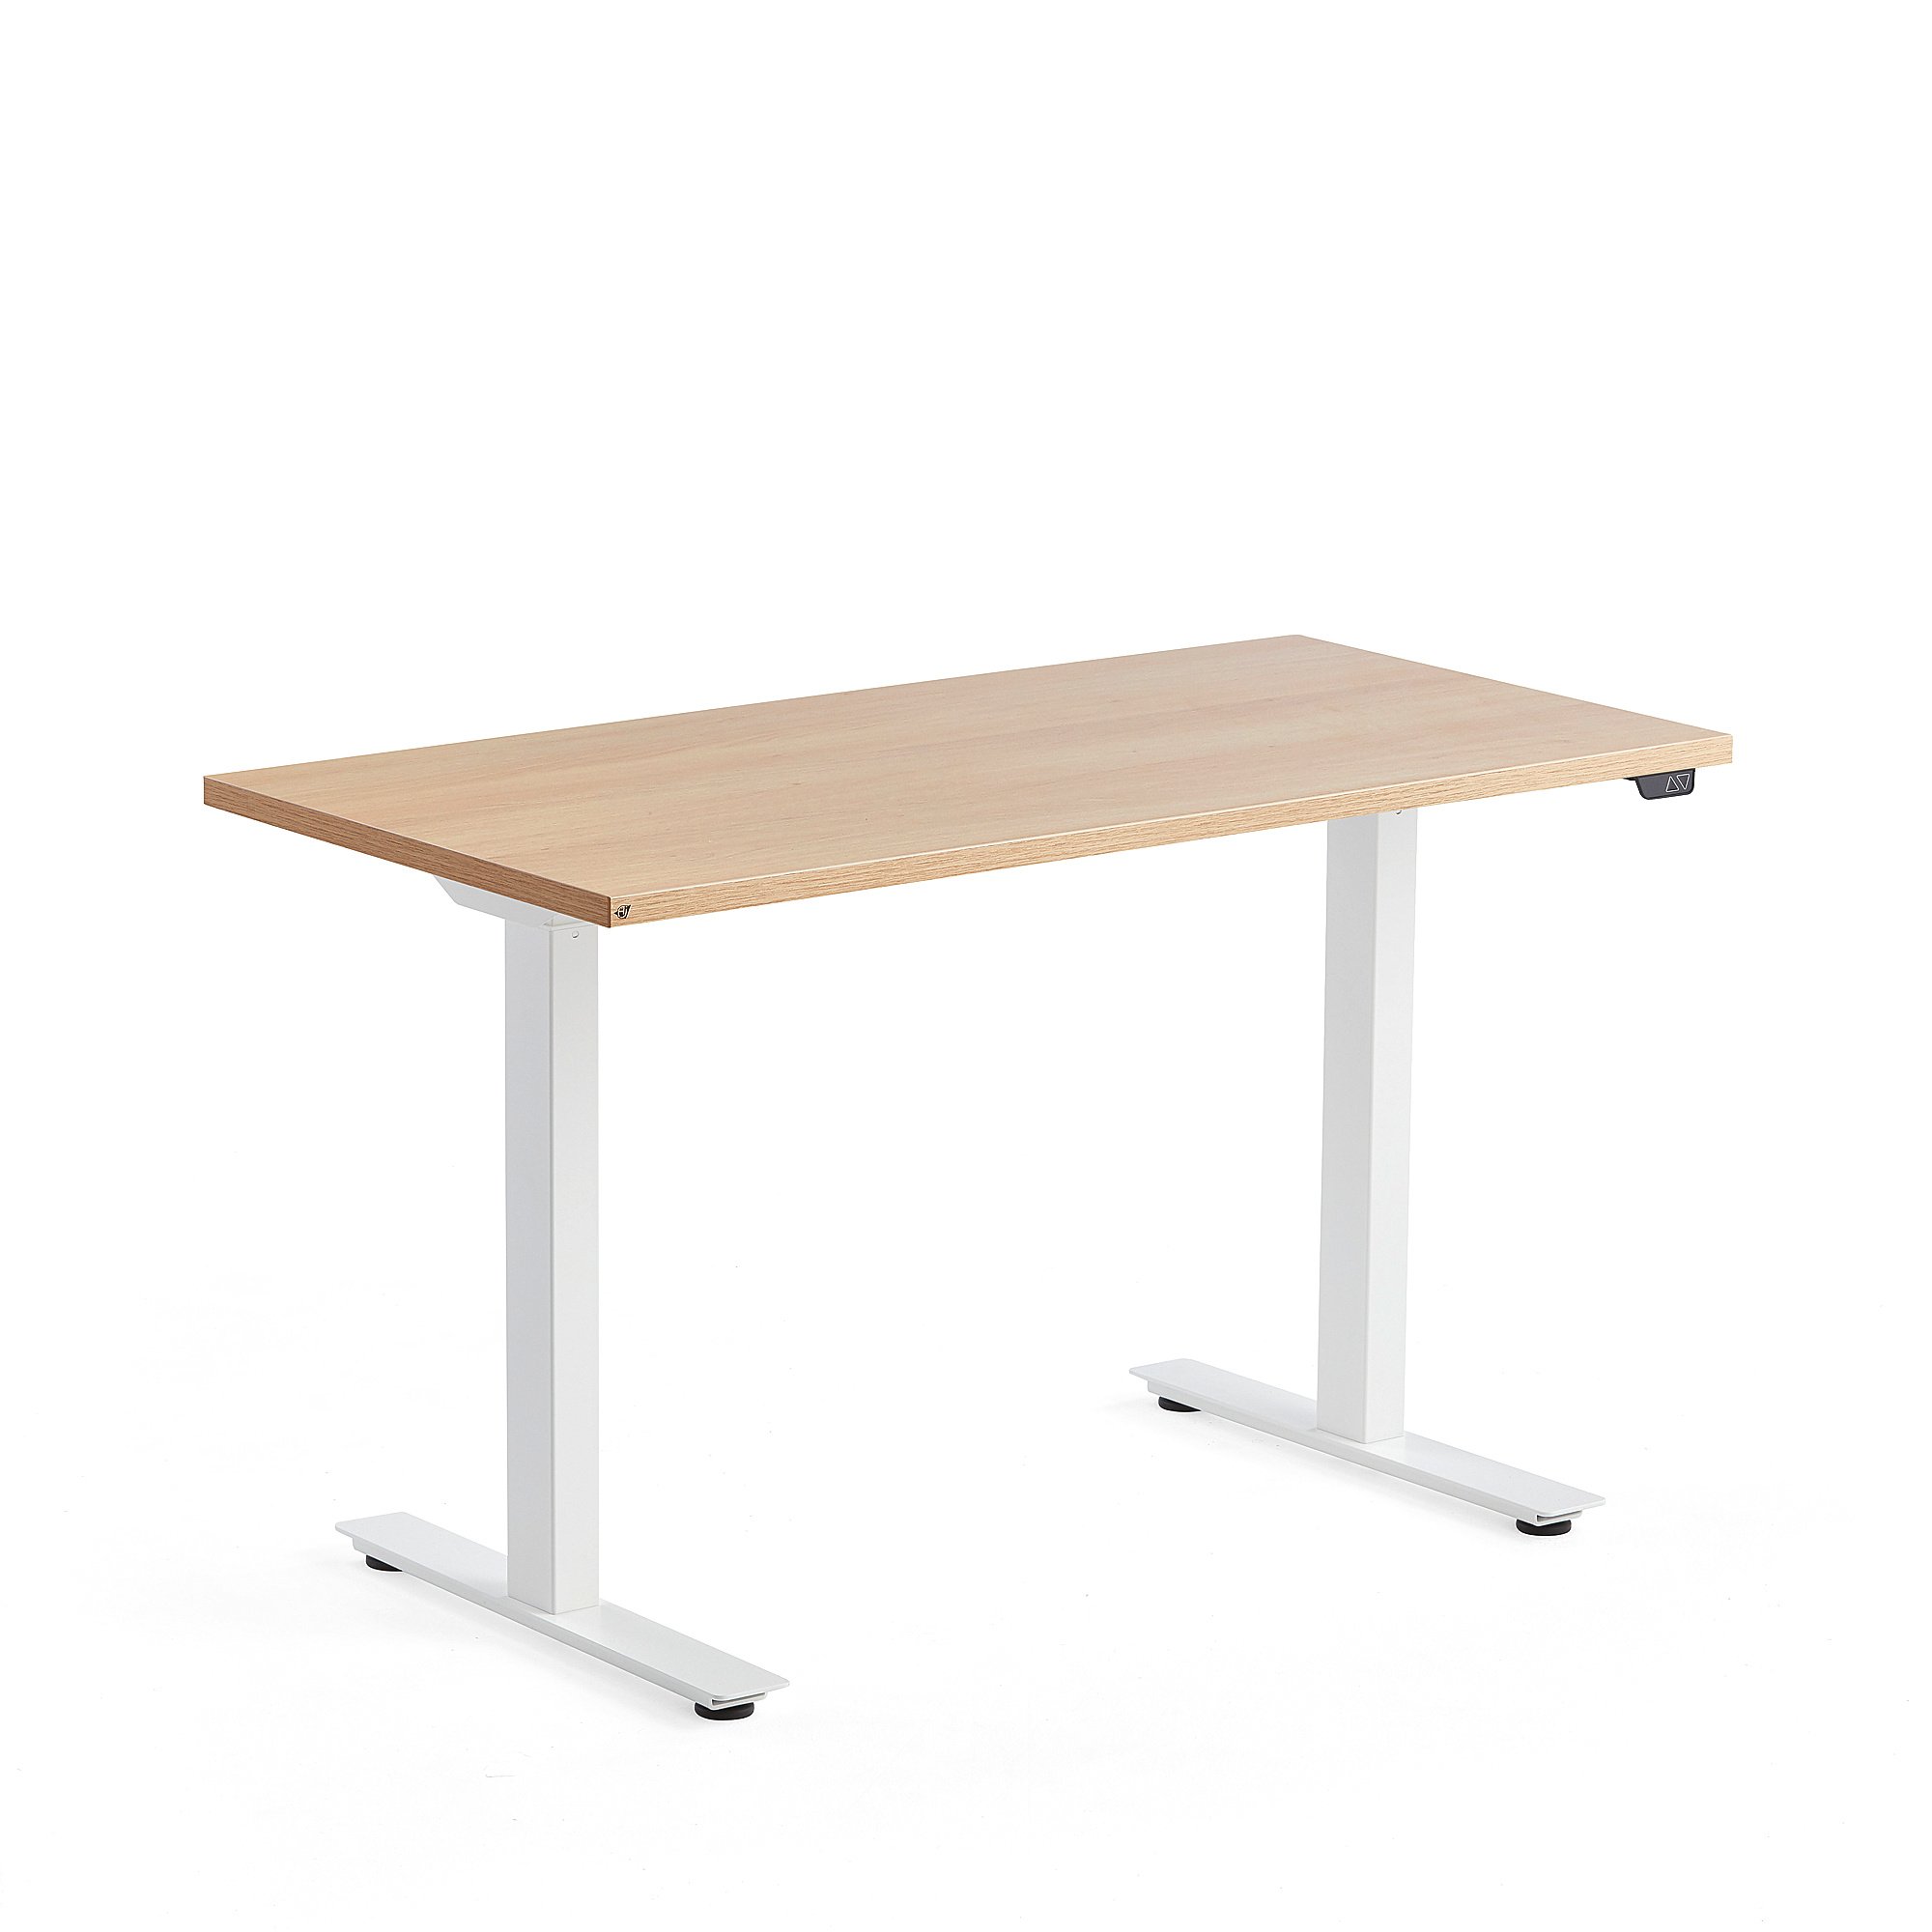 Výškově nastavitelný stůl MODULUS, 1200x600 mm, bílý rám, dub